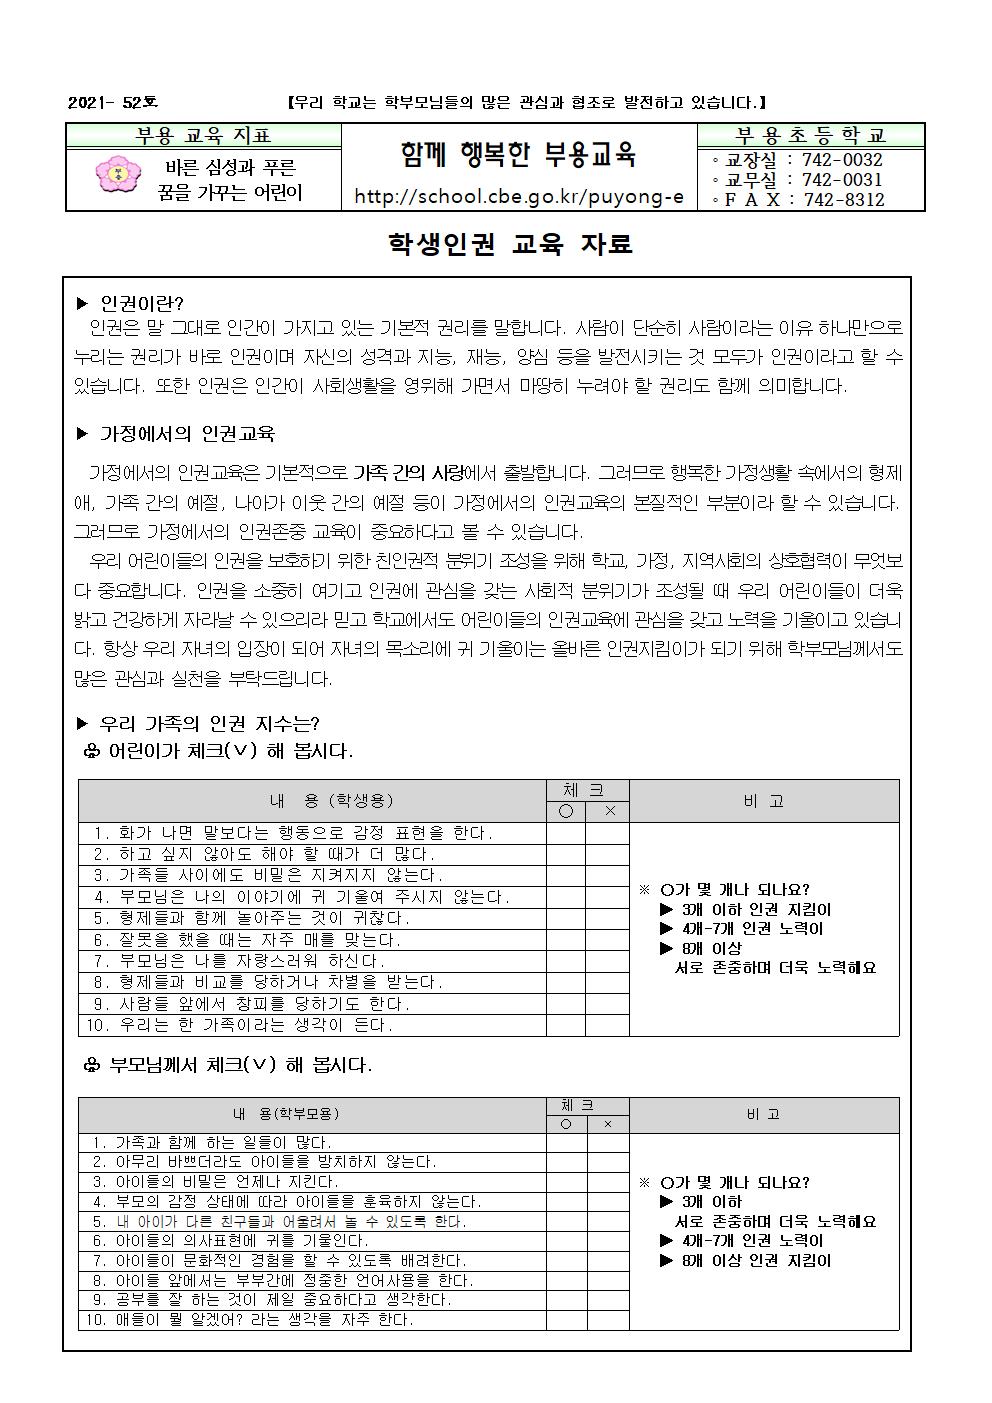 2021. 학생인권 교육 가정통신문-52호001